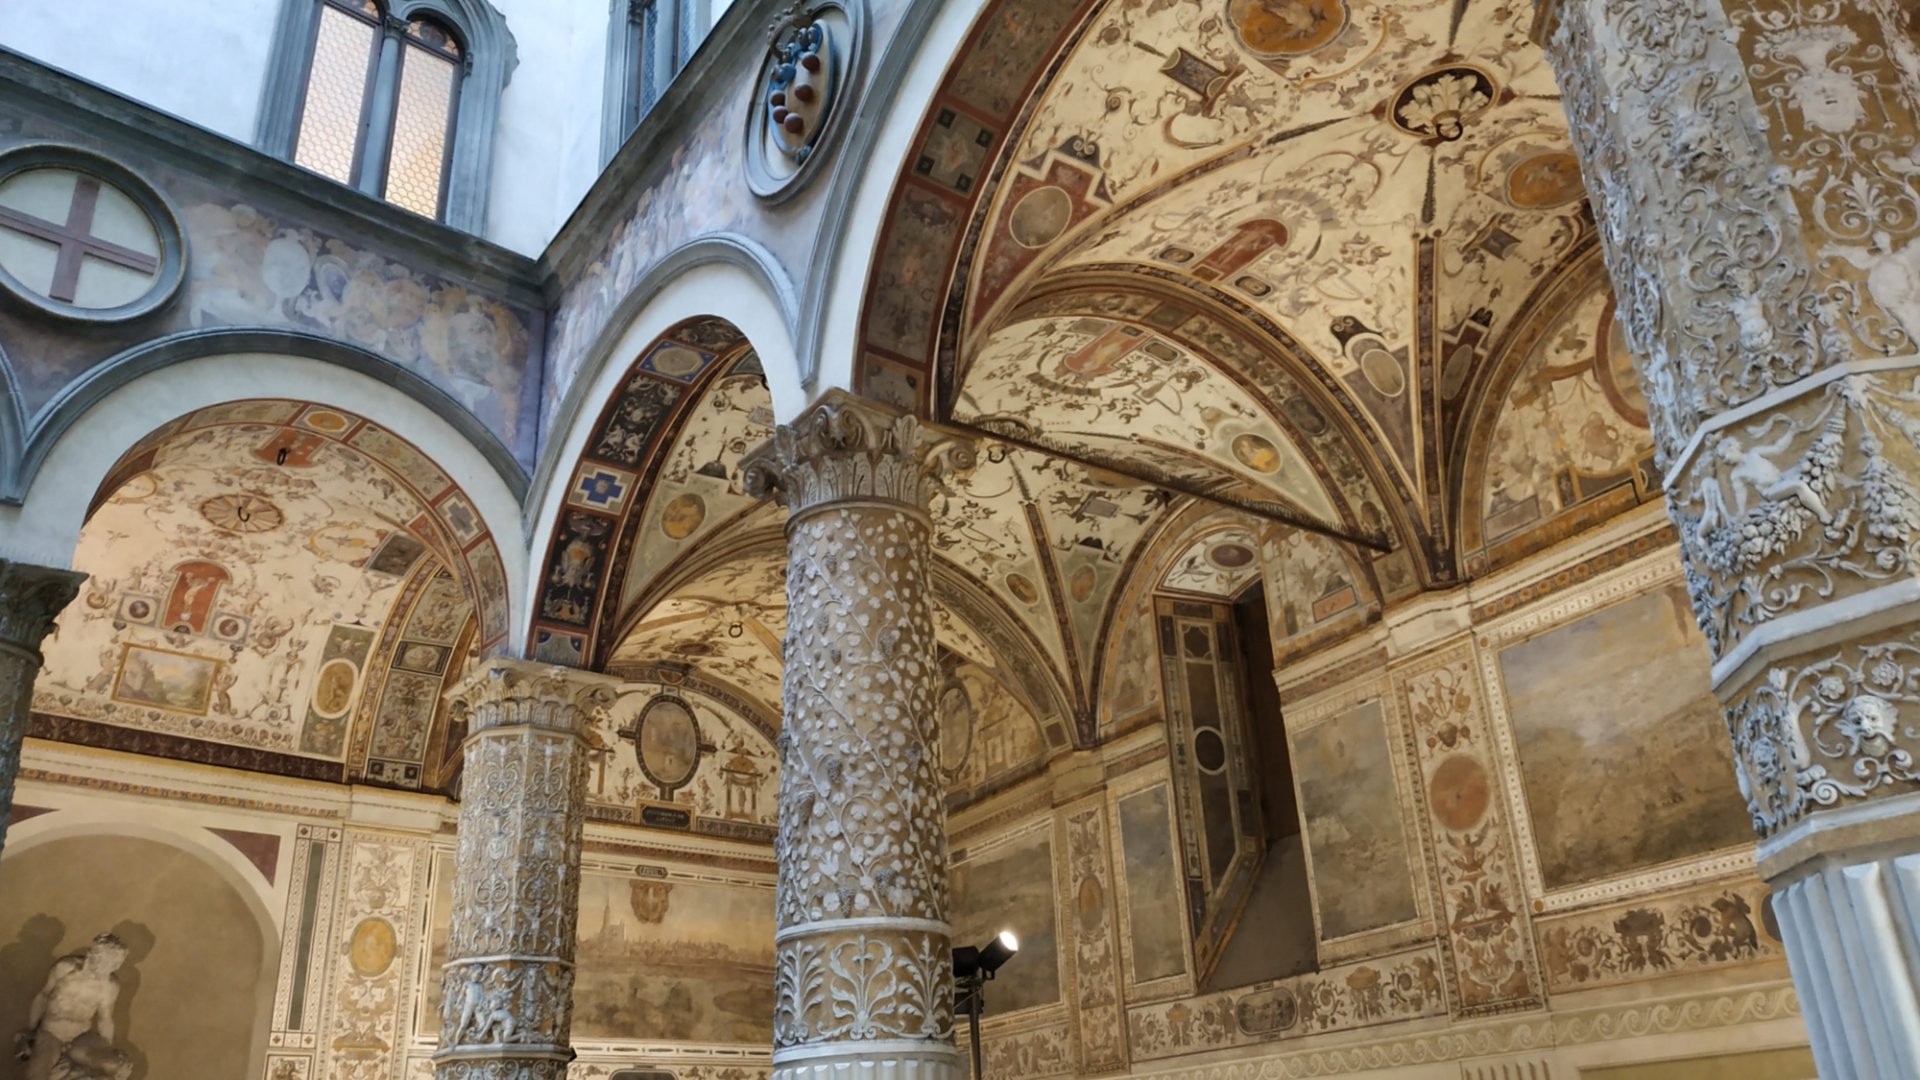 Visita guidata di Palazzo Vecchio nel centro di Firenze